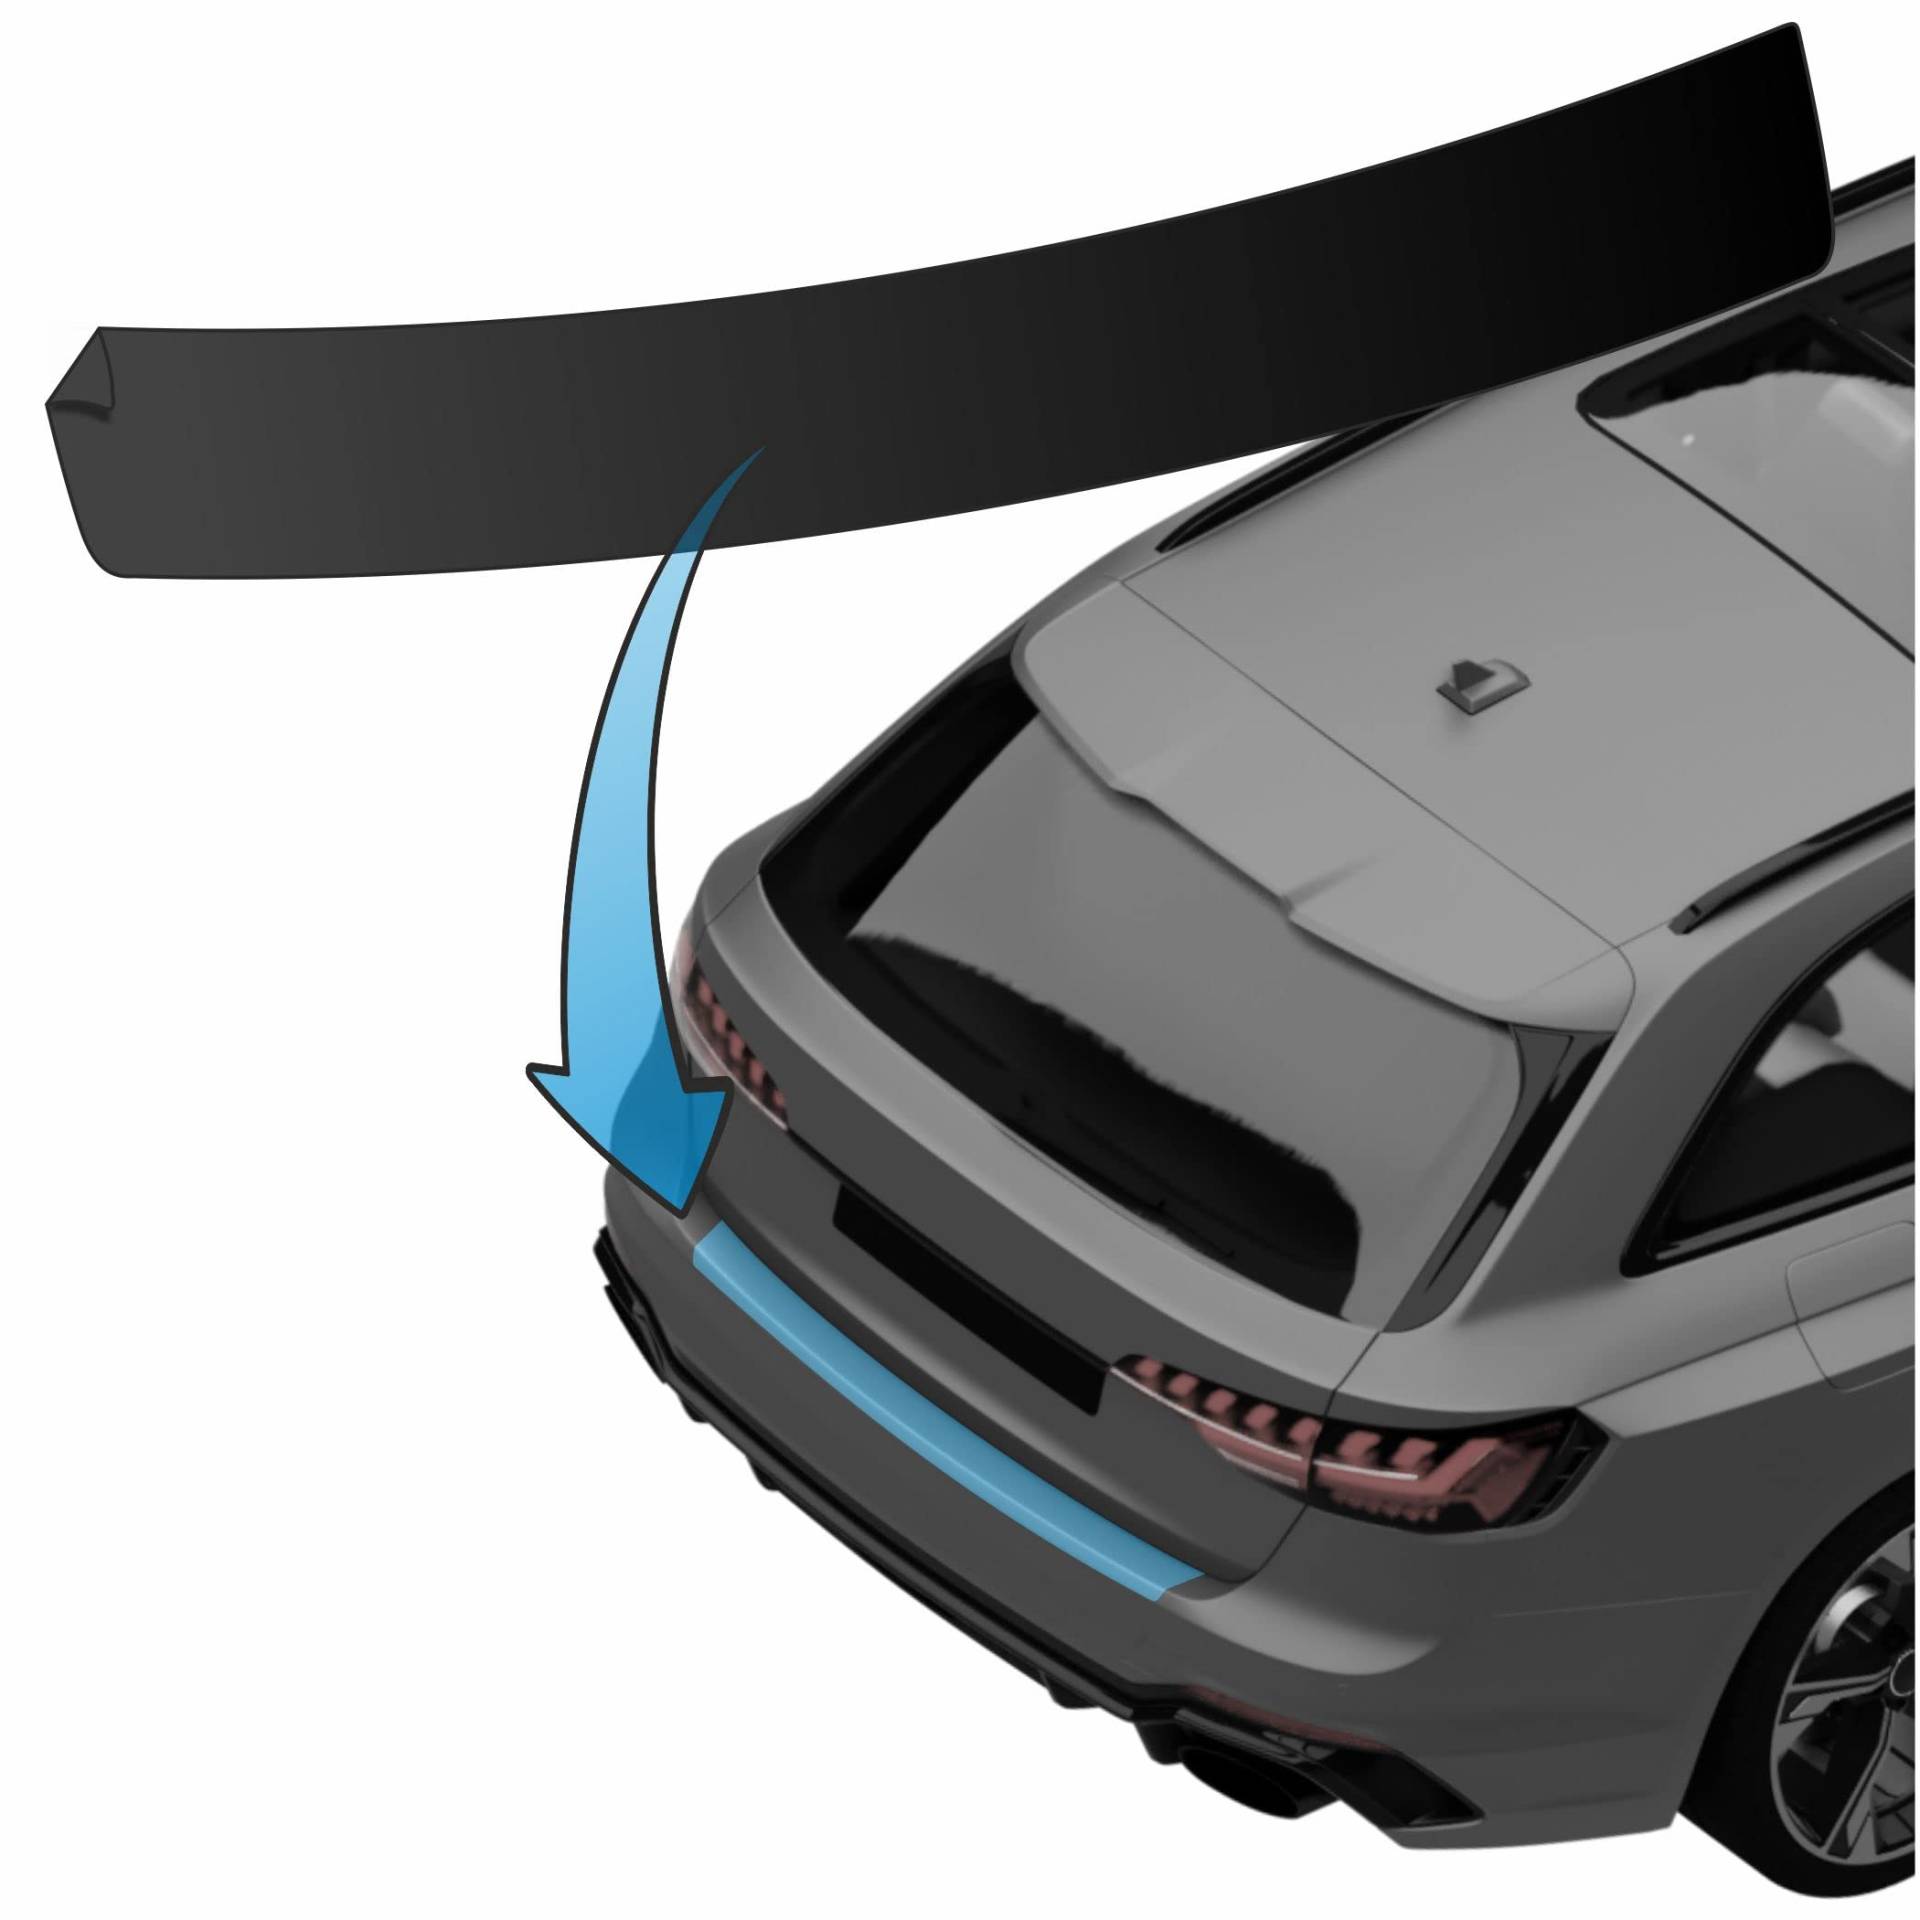 MisterLacky – Lackschutzfolie mit Rakel als Ladekantenschutz Folie passend für Seat Leon (III) Typ 5F, ab BJ 10/2012 in schwarz matt (150µm) von Lackschutzshop